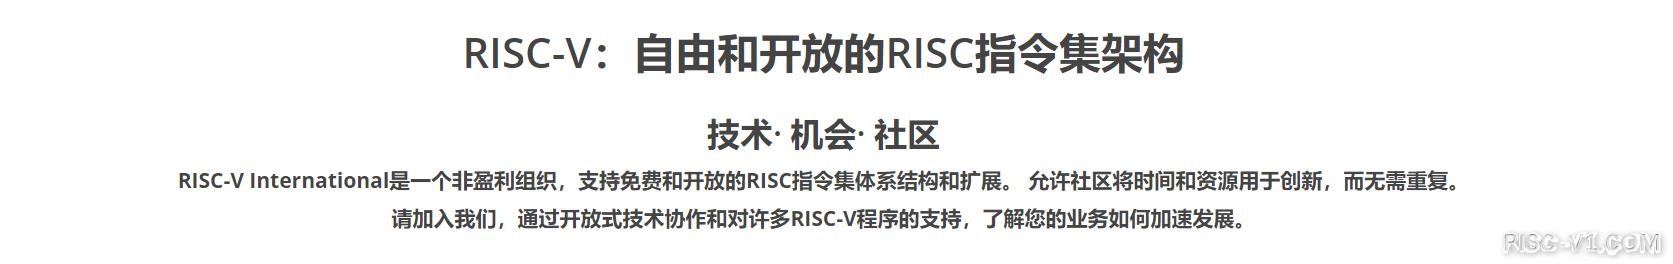 社区公告-RISC-V 中国峰会2023 8月即将举办【第三届RISC-V中国峰会】【RISC-V Summit China 2023】risc-v单片机中文社区(1)